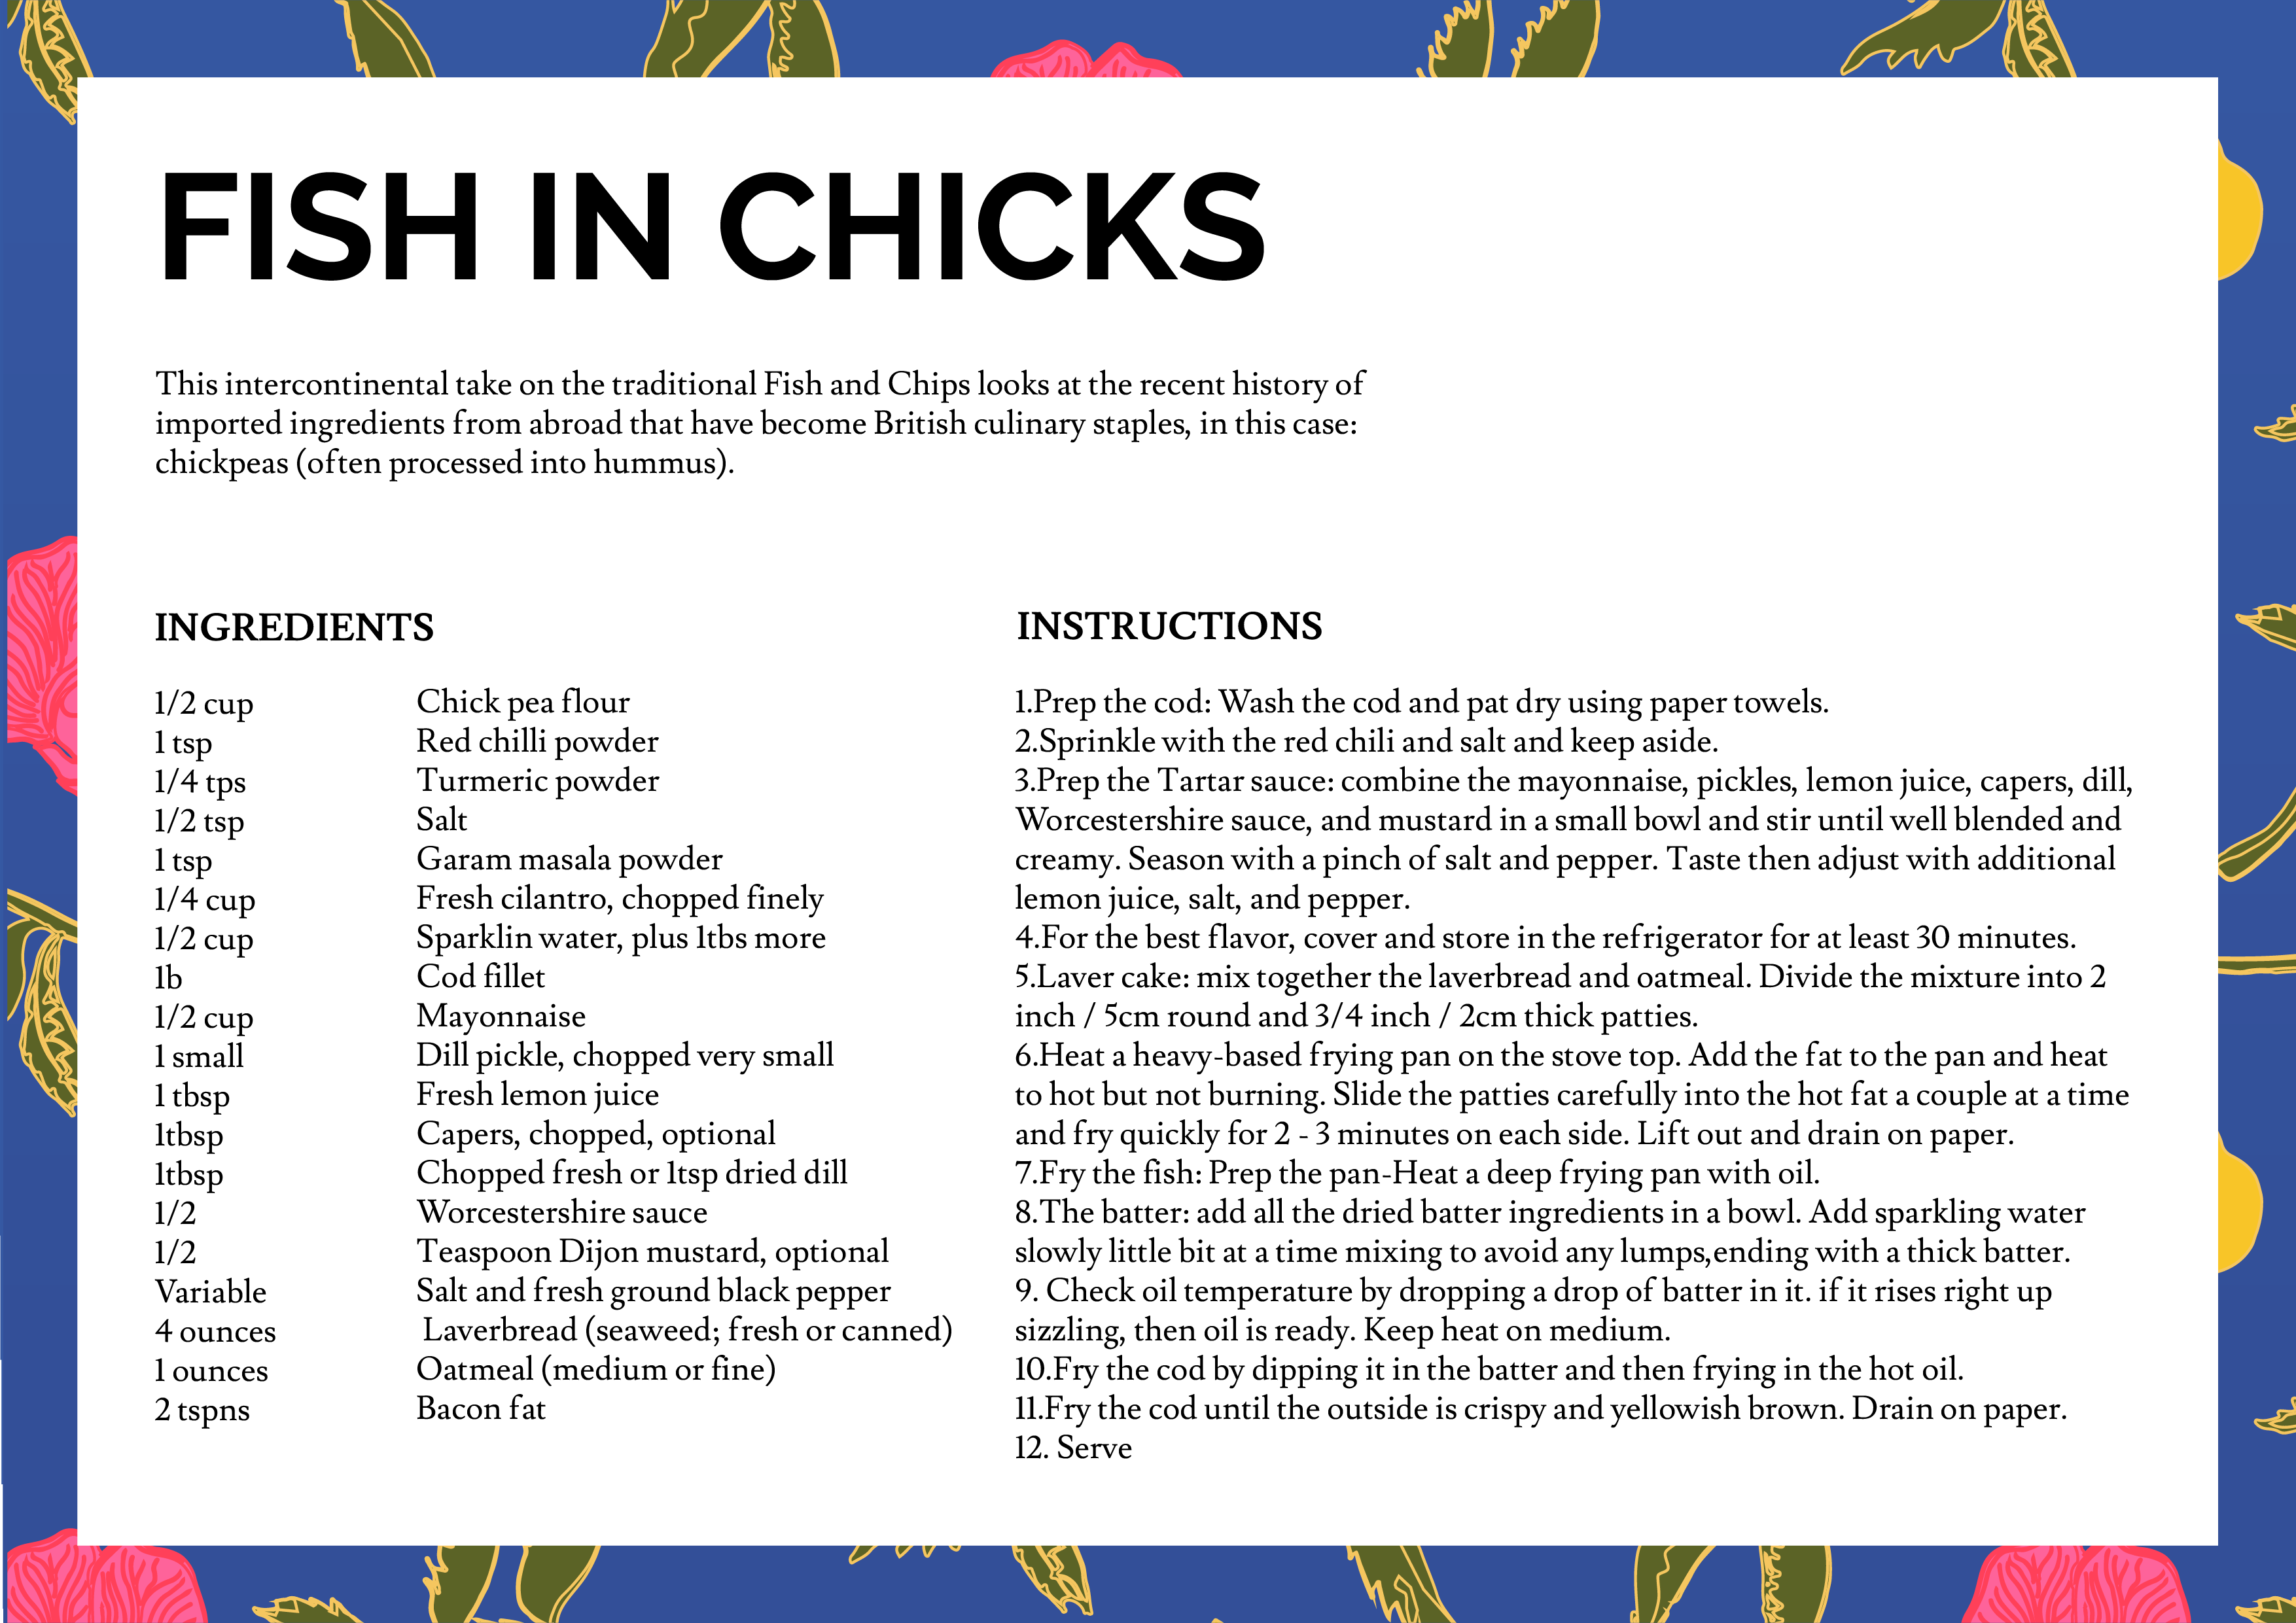 Fish in Chicks Recipe